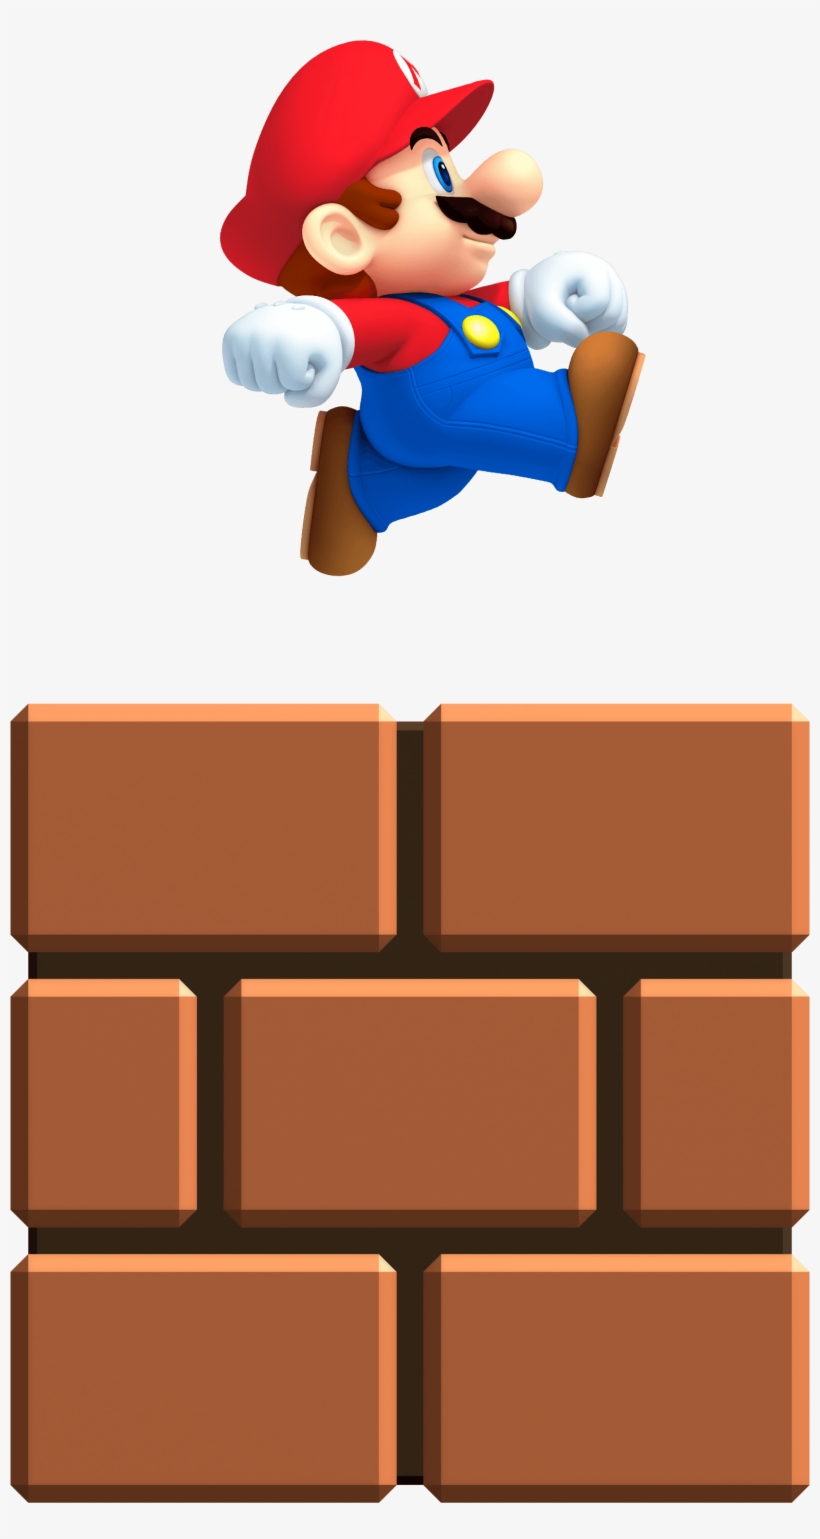 Mini Mario New Super Mario Bros, transparent png #3253740